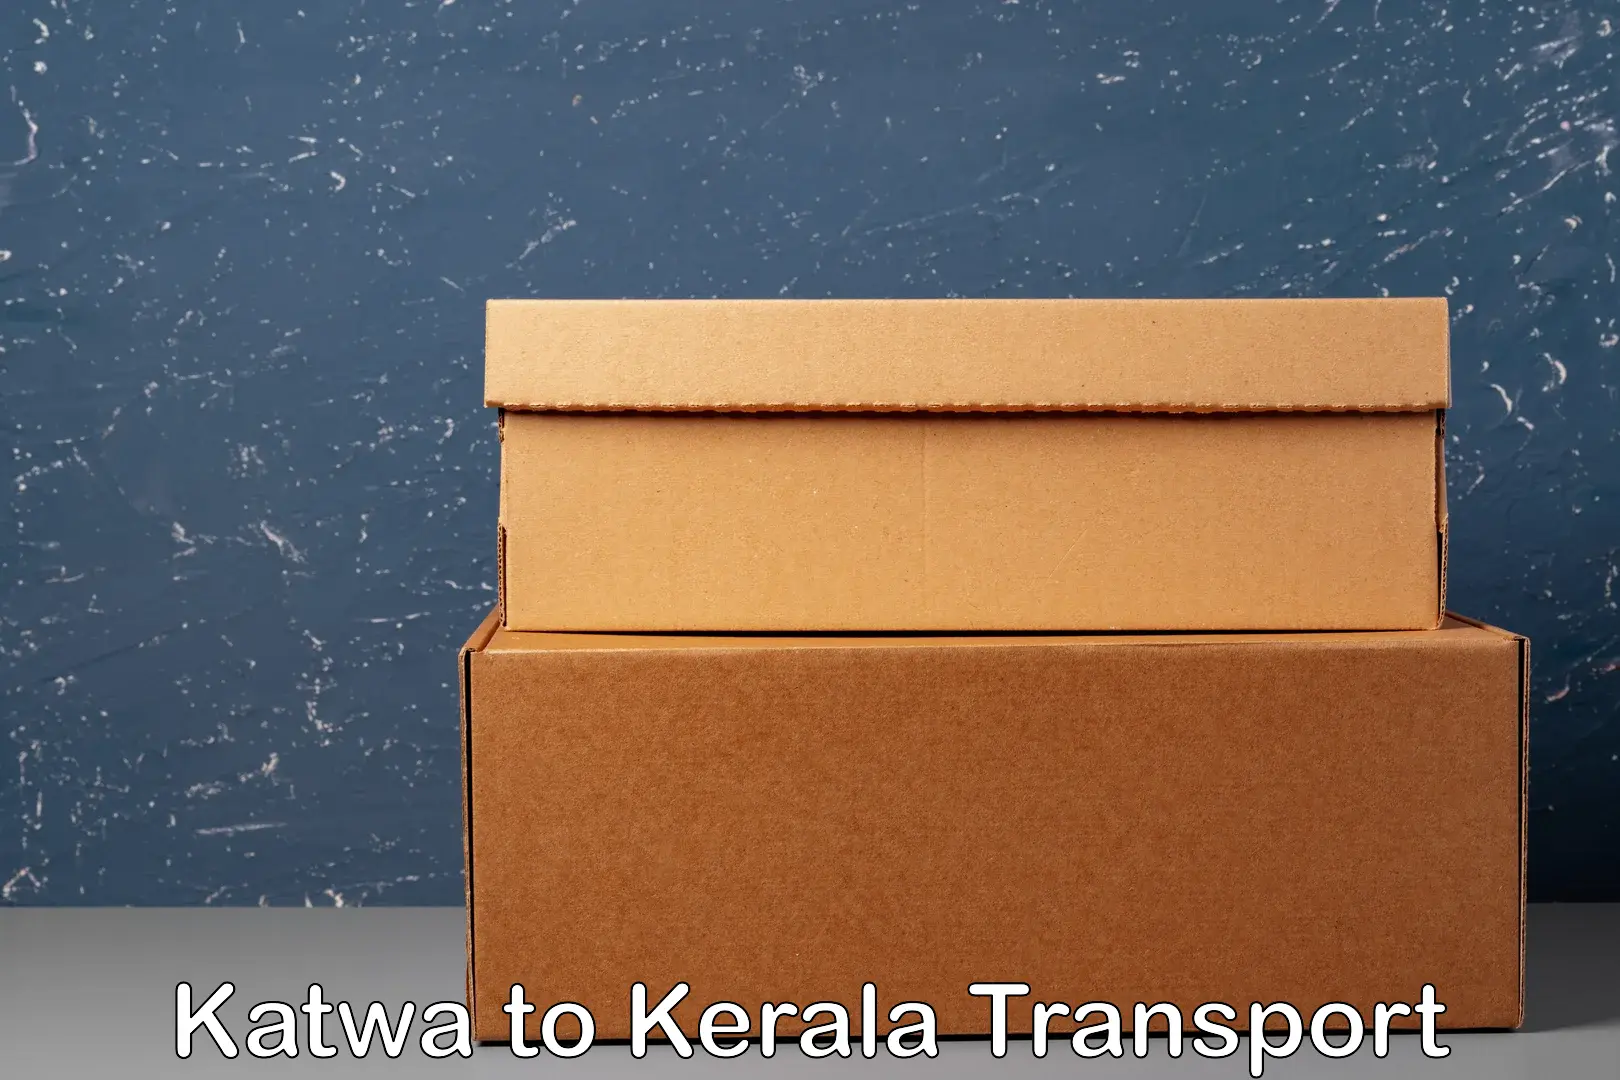 Shipping partner Katwa to Palai